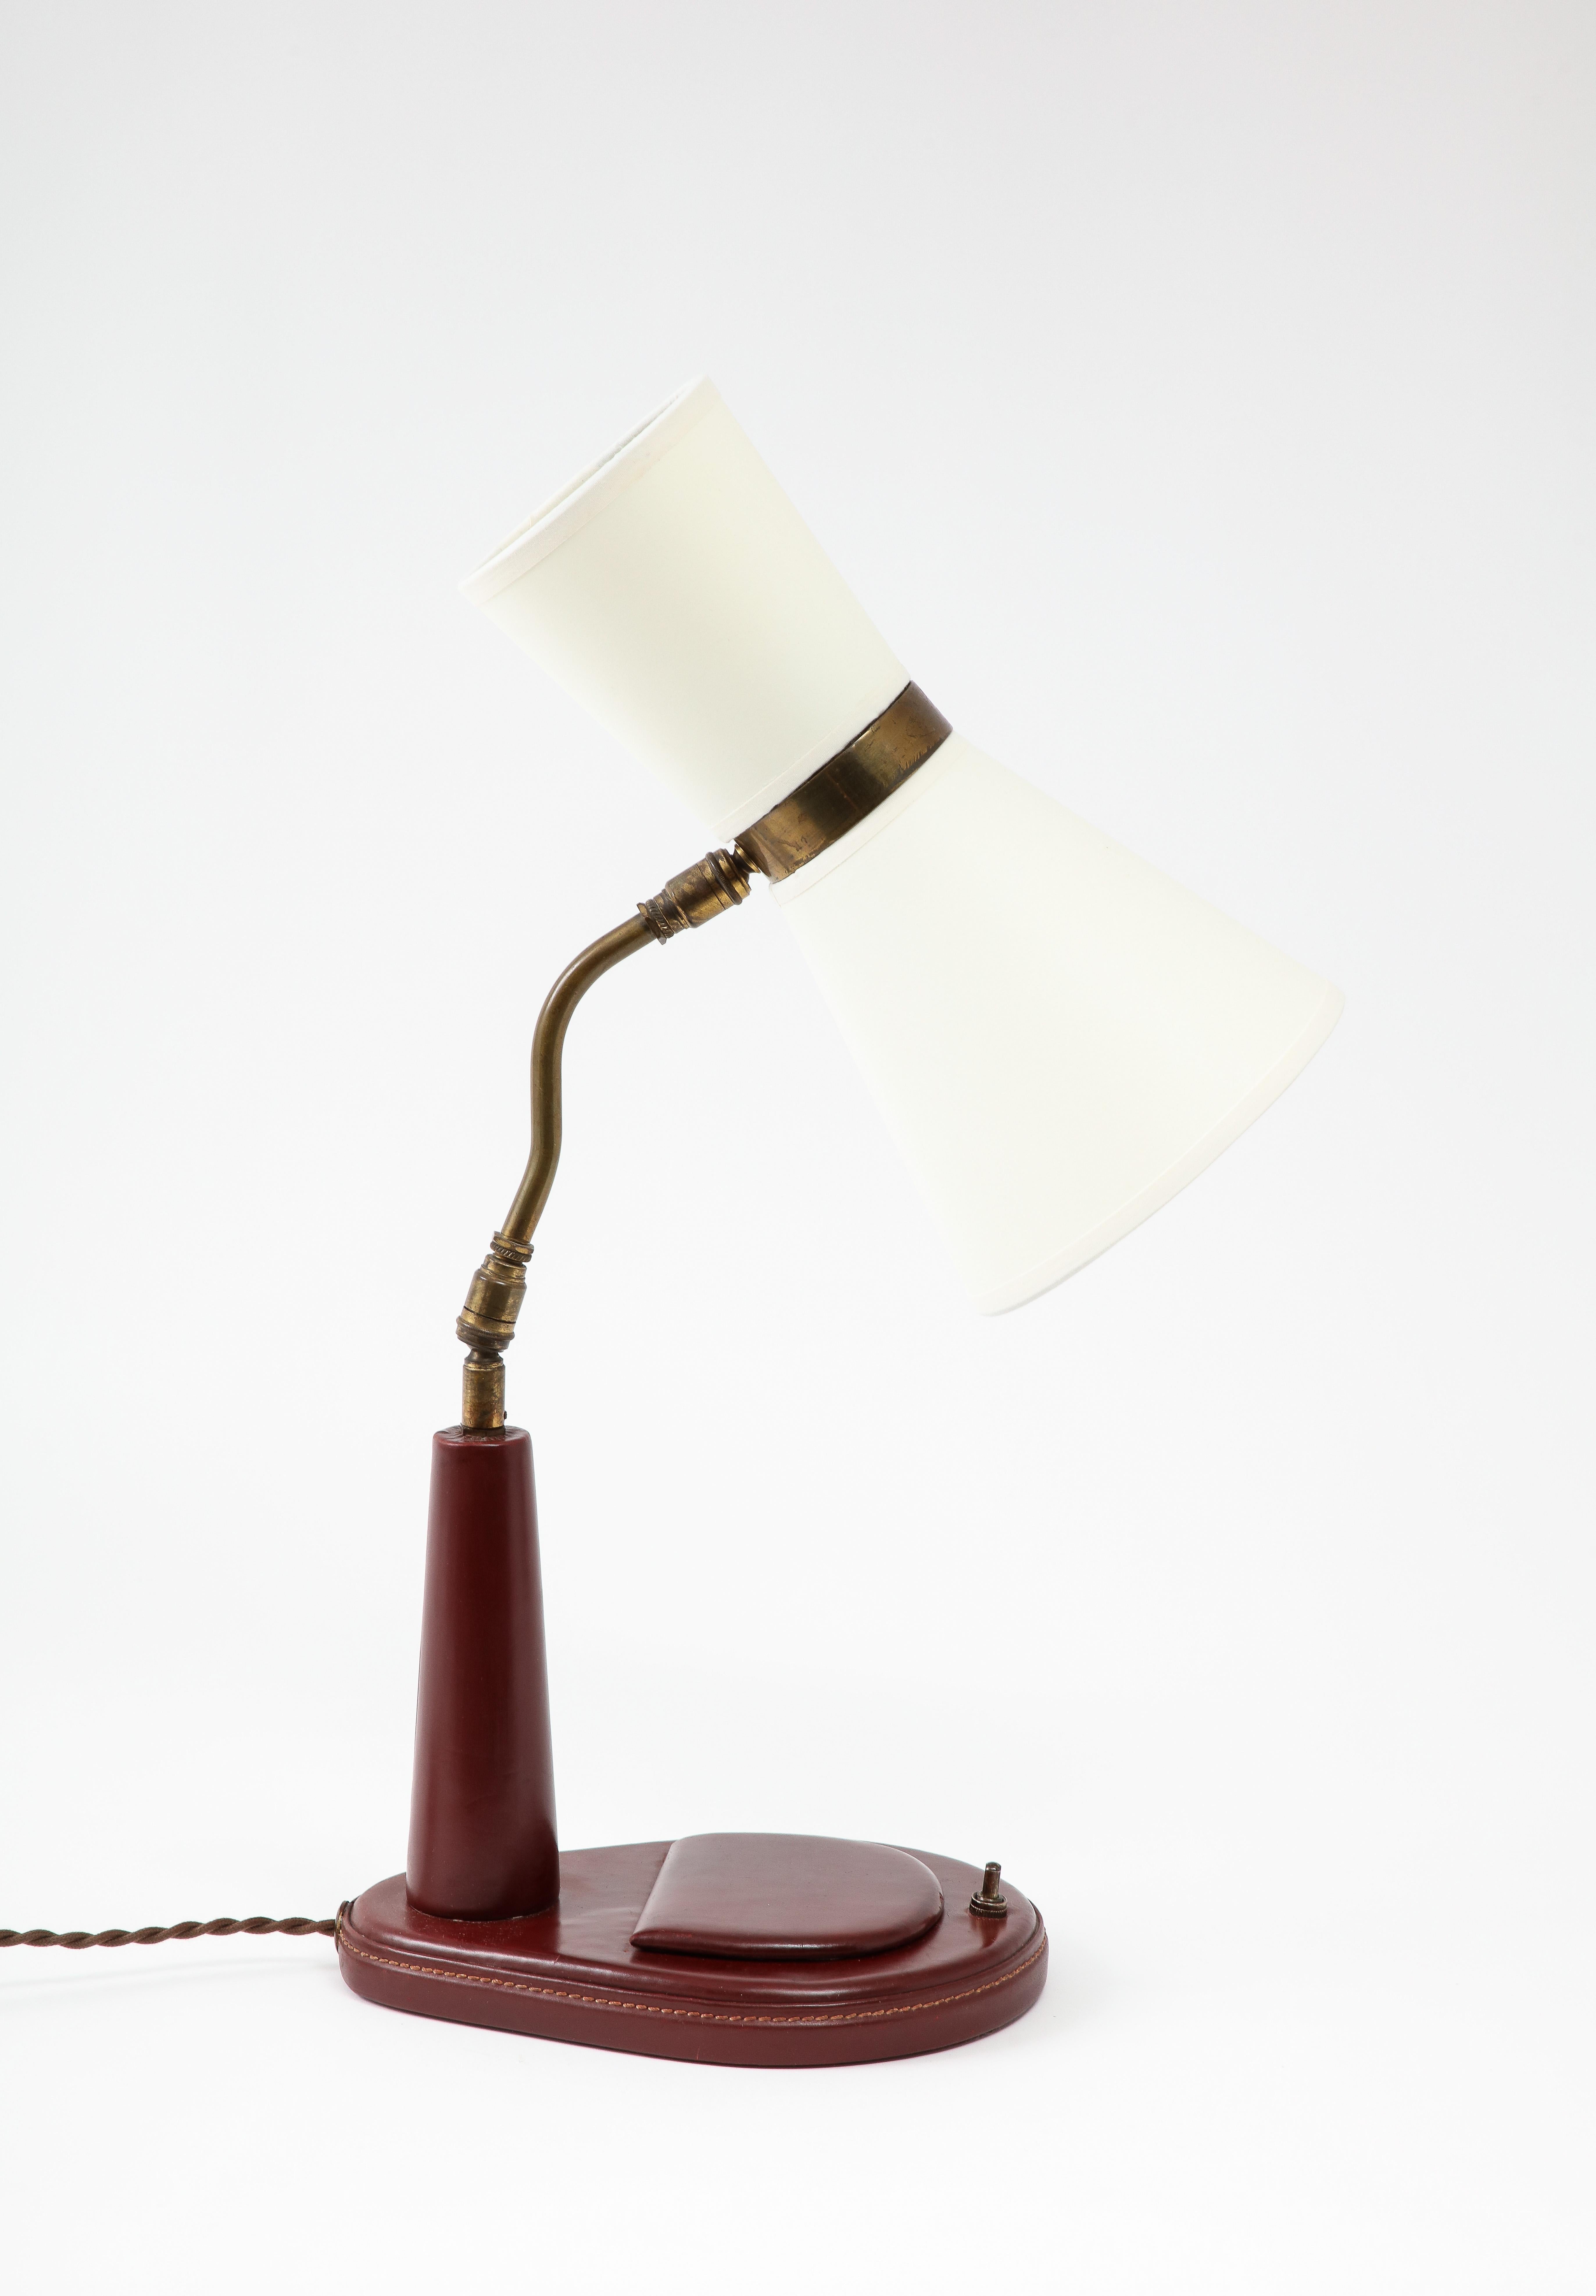 20th Century Lancel Burgundy Leather Desk Lamp after Adnet, France 1960's For Sale